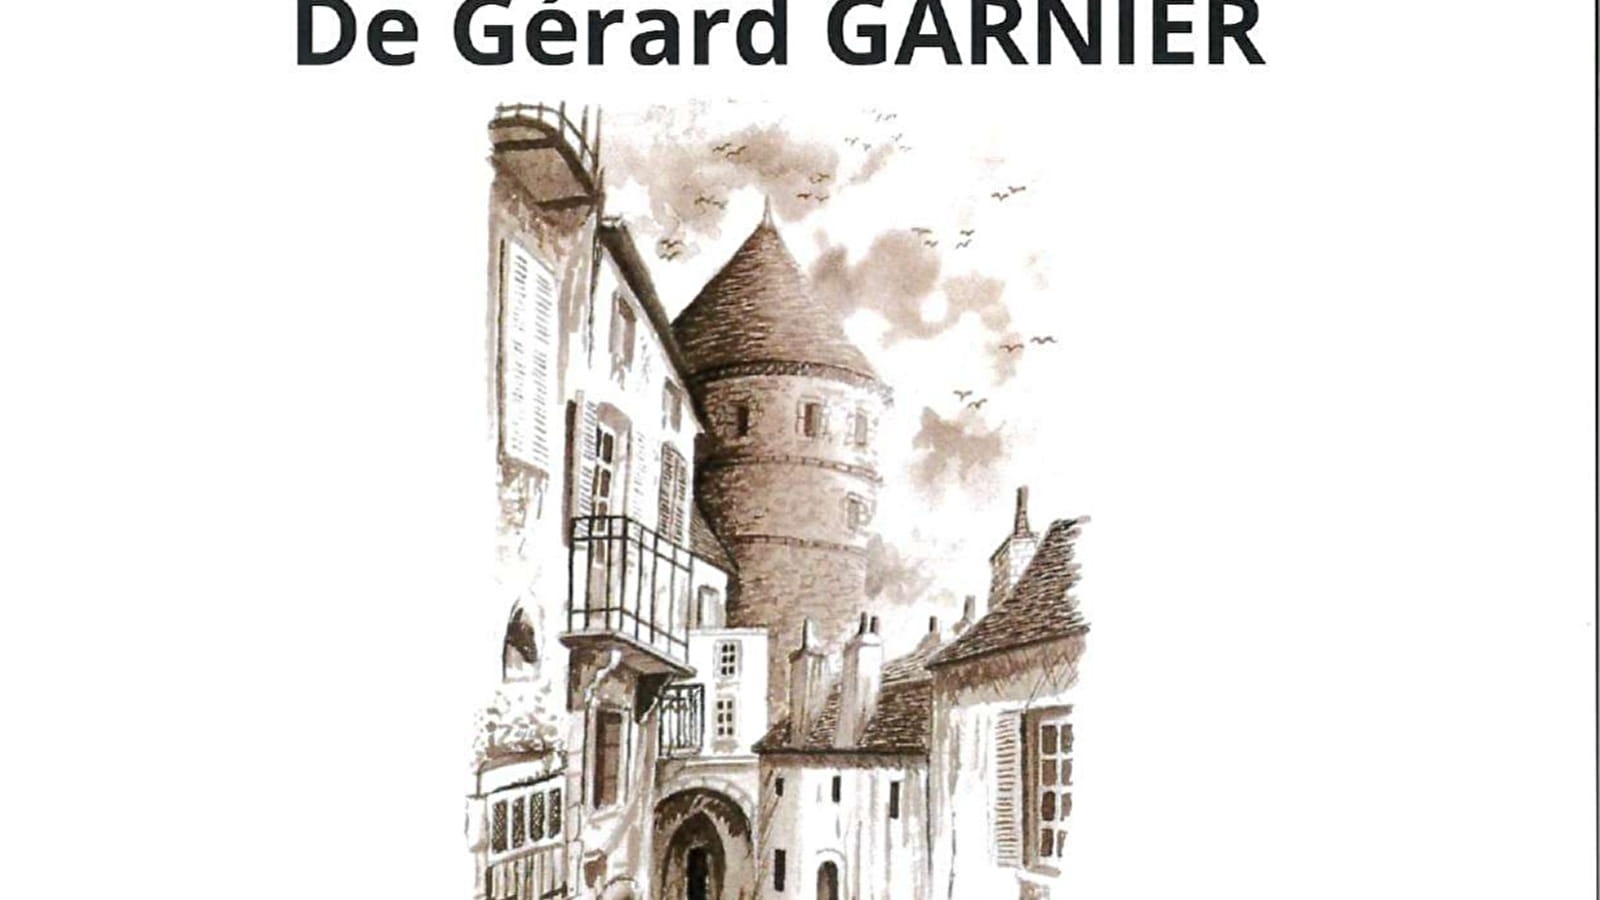 Gérard GARNIER exhibition